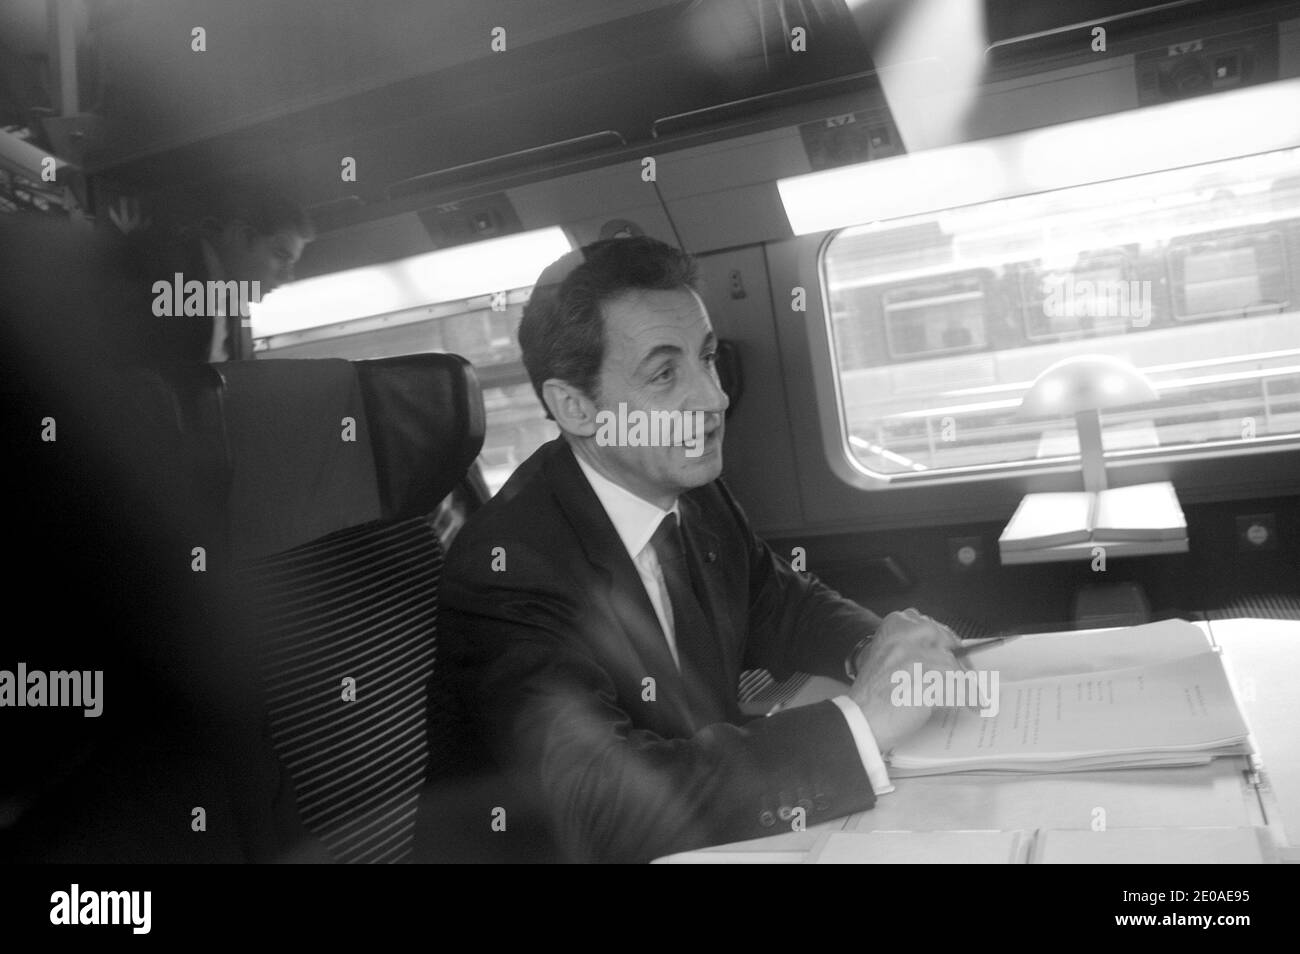 Il presidente francese e il candidato francese UMP per le elezioni presidenziali del 2012, Nicolas Sarkozy, siede su un treno ad alta velocità (TGV) vicino a Rachida dati, eurodeputato ed ex ministro della Giustizia, prima di partire per Lille, Francia, il 23 febbraio 2012, per tenere una riunione di campagna. Foto di Alain Apaydin/ABACAPRESS.COM Foto Stock